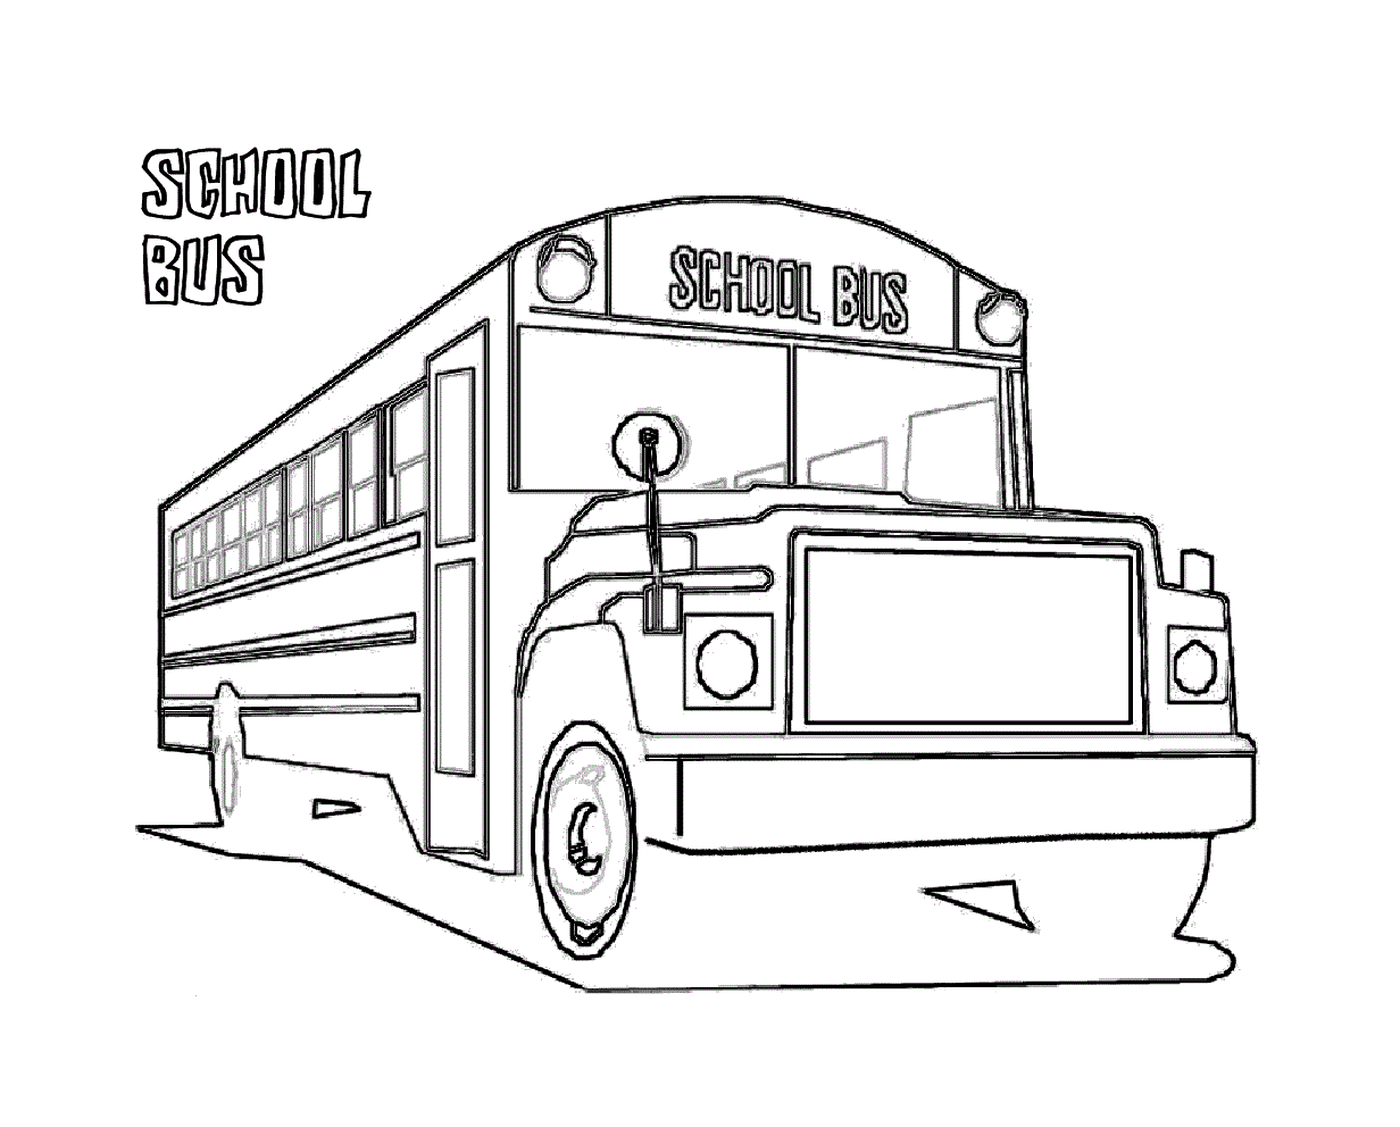   Un bus scolaire se dirige vers l'école 